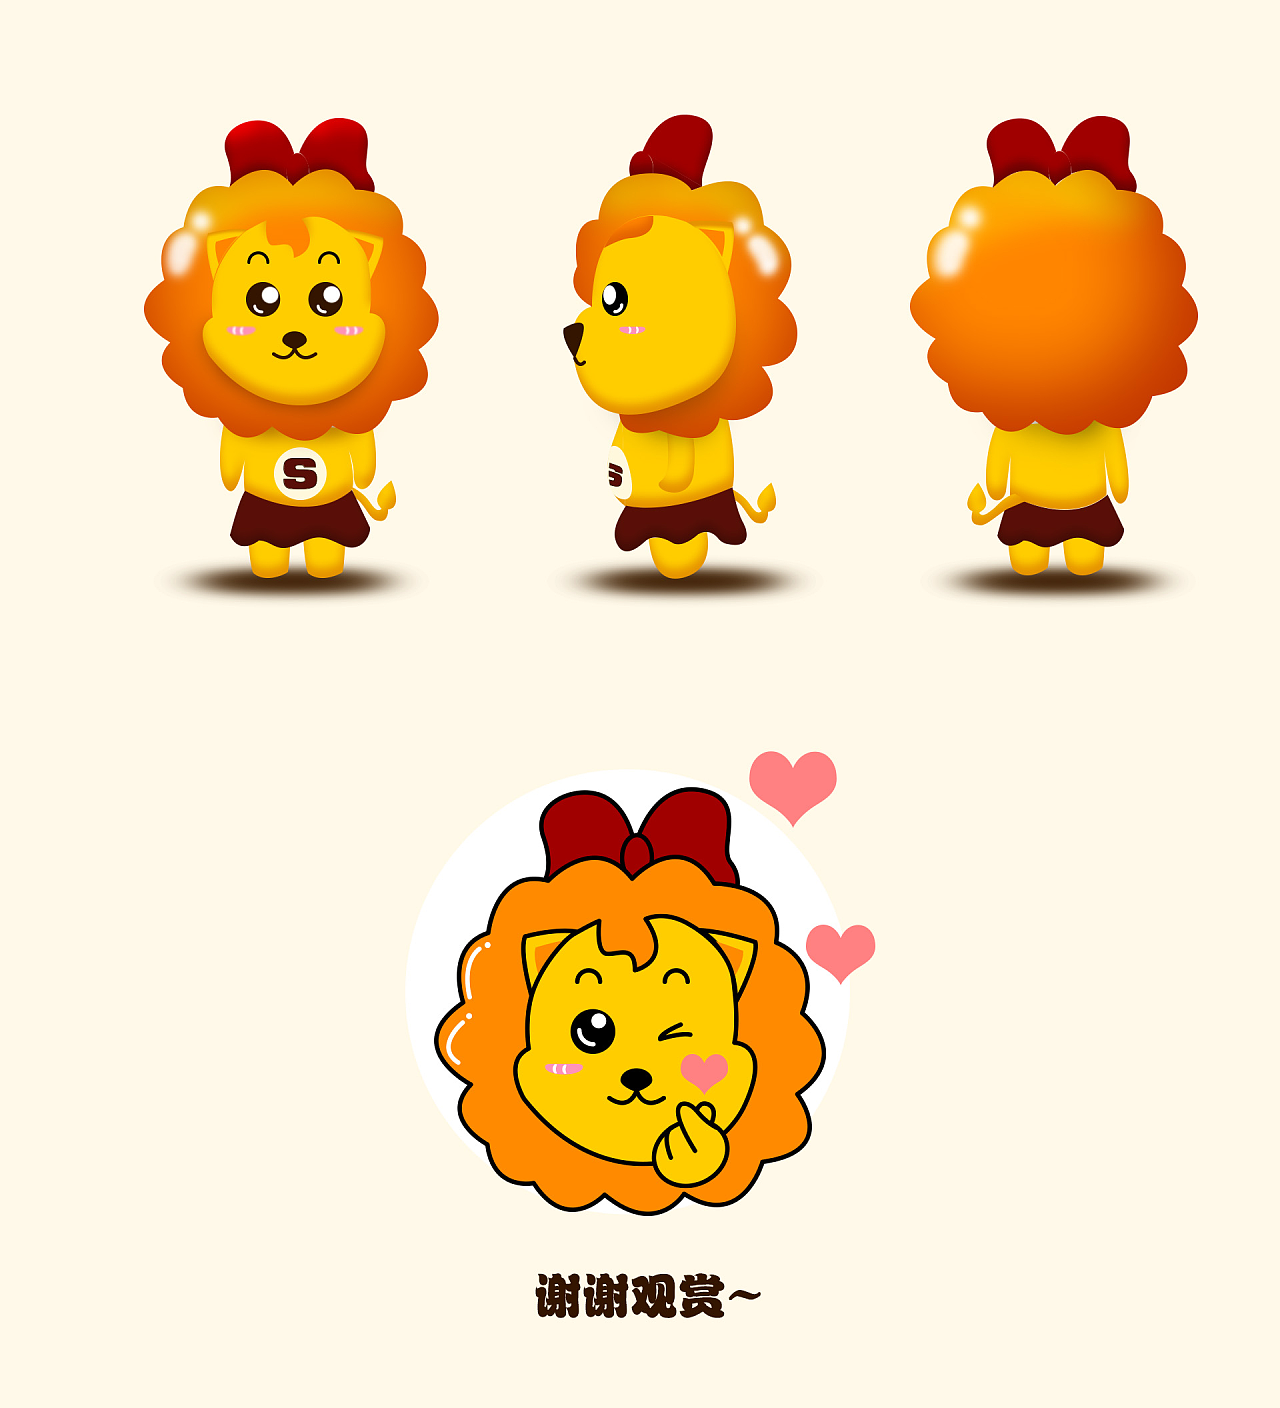 小狮子吉祥物及衍生品设计方案